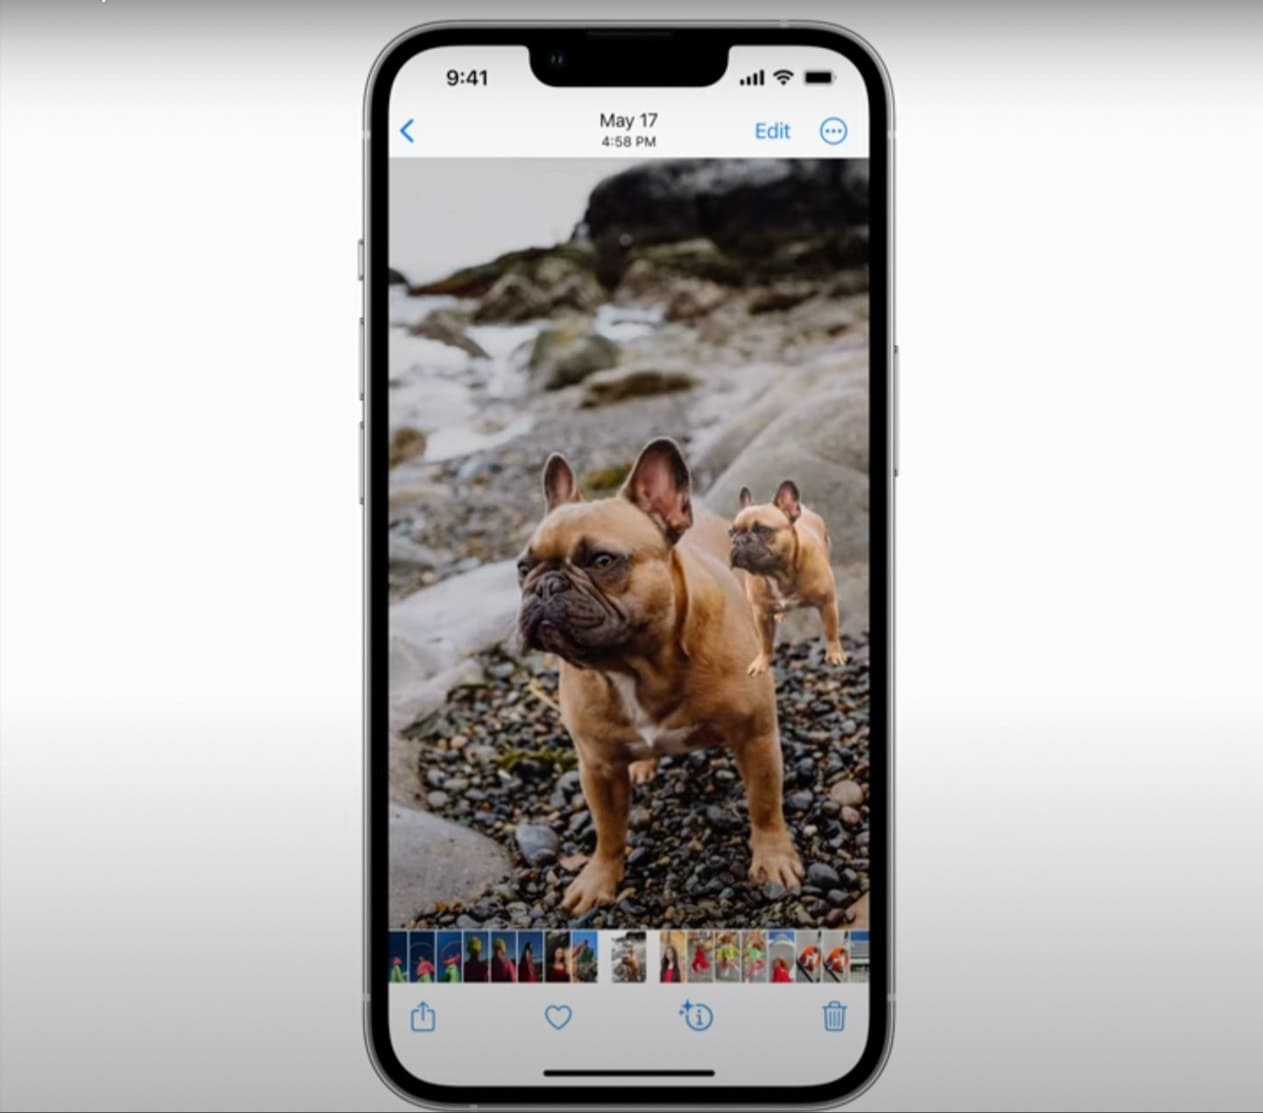 iOS 16 - Sự ra mắt của iOS 16 đã nâng cao trải nghiệm của người dùng khi sử dụng tính năng tách nền ảnh. Hệ điều hành mới này sẽ mang lại các công cụ hiện đại và chuyên nghiệp giúp bạn tách nền ảnh dễ dàng, nhanh chóng và chính xác hơn bao giờ hết. Điều này sẽ giúp bạn tạo ra những bức ảnh ấn tượng và đẹp mắt hơn bao giờ hết.